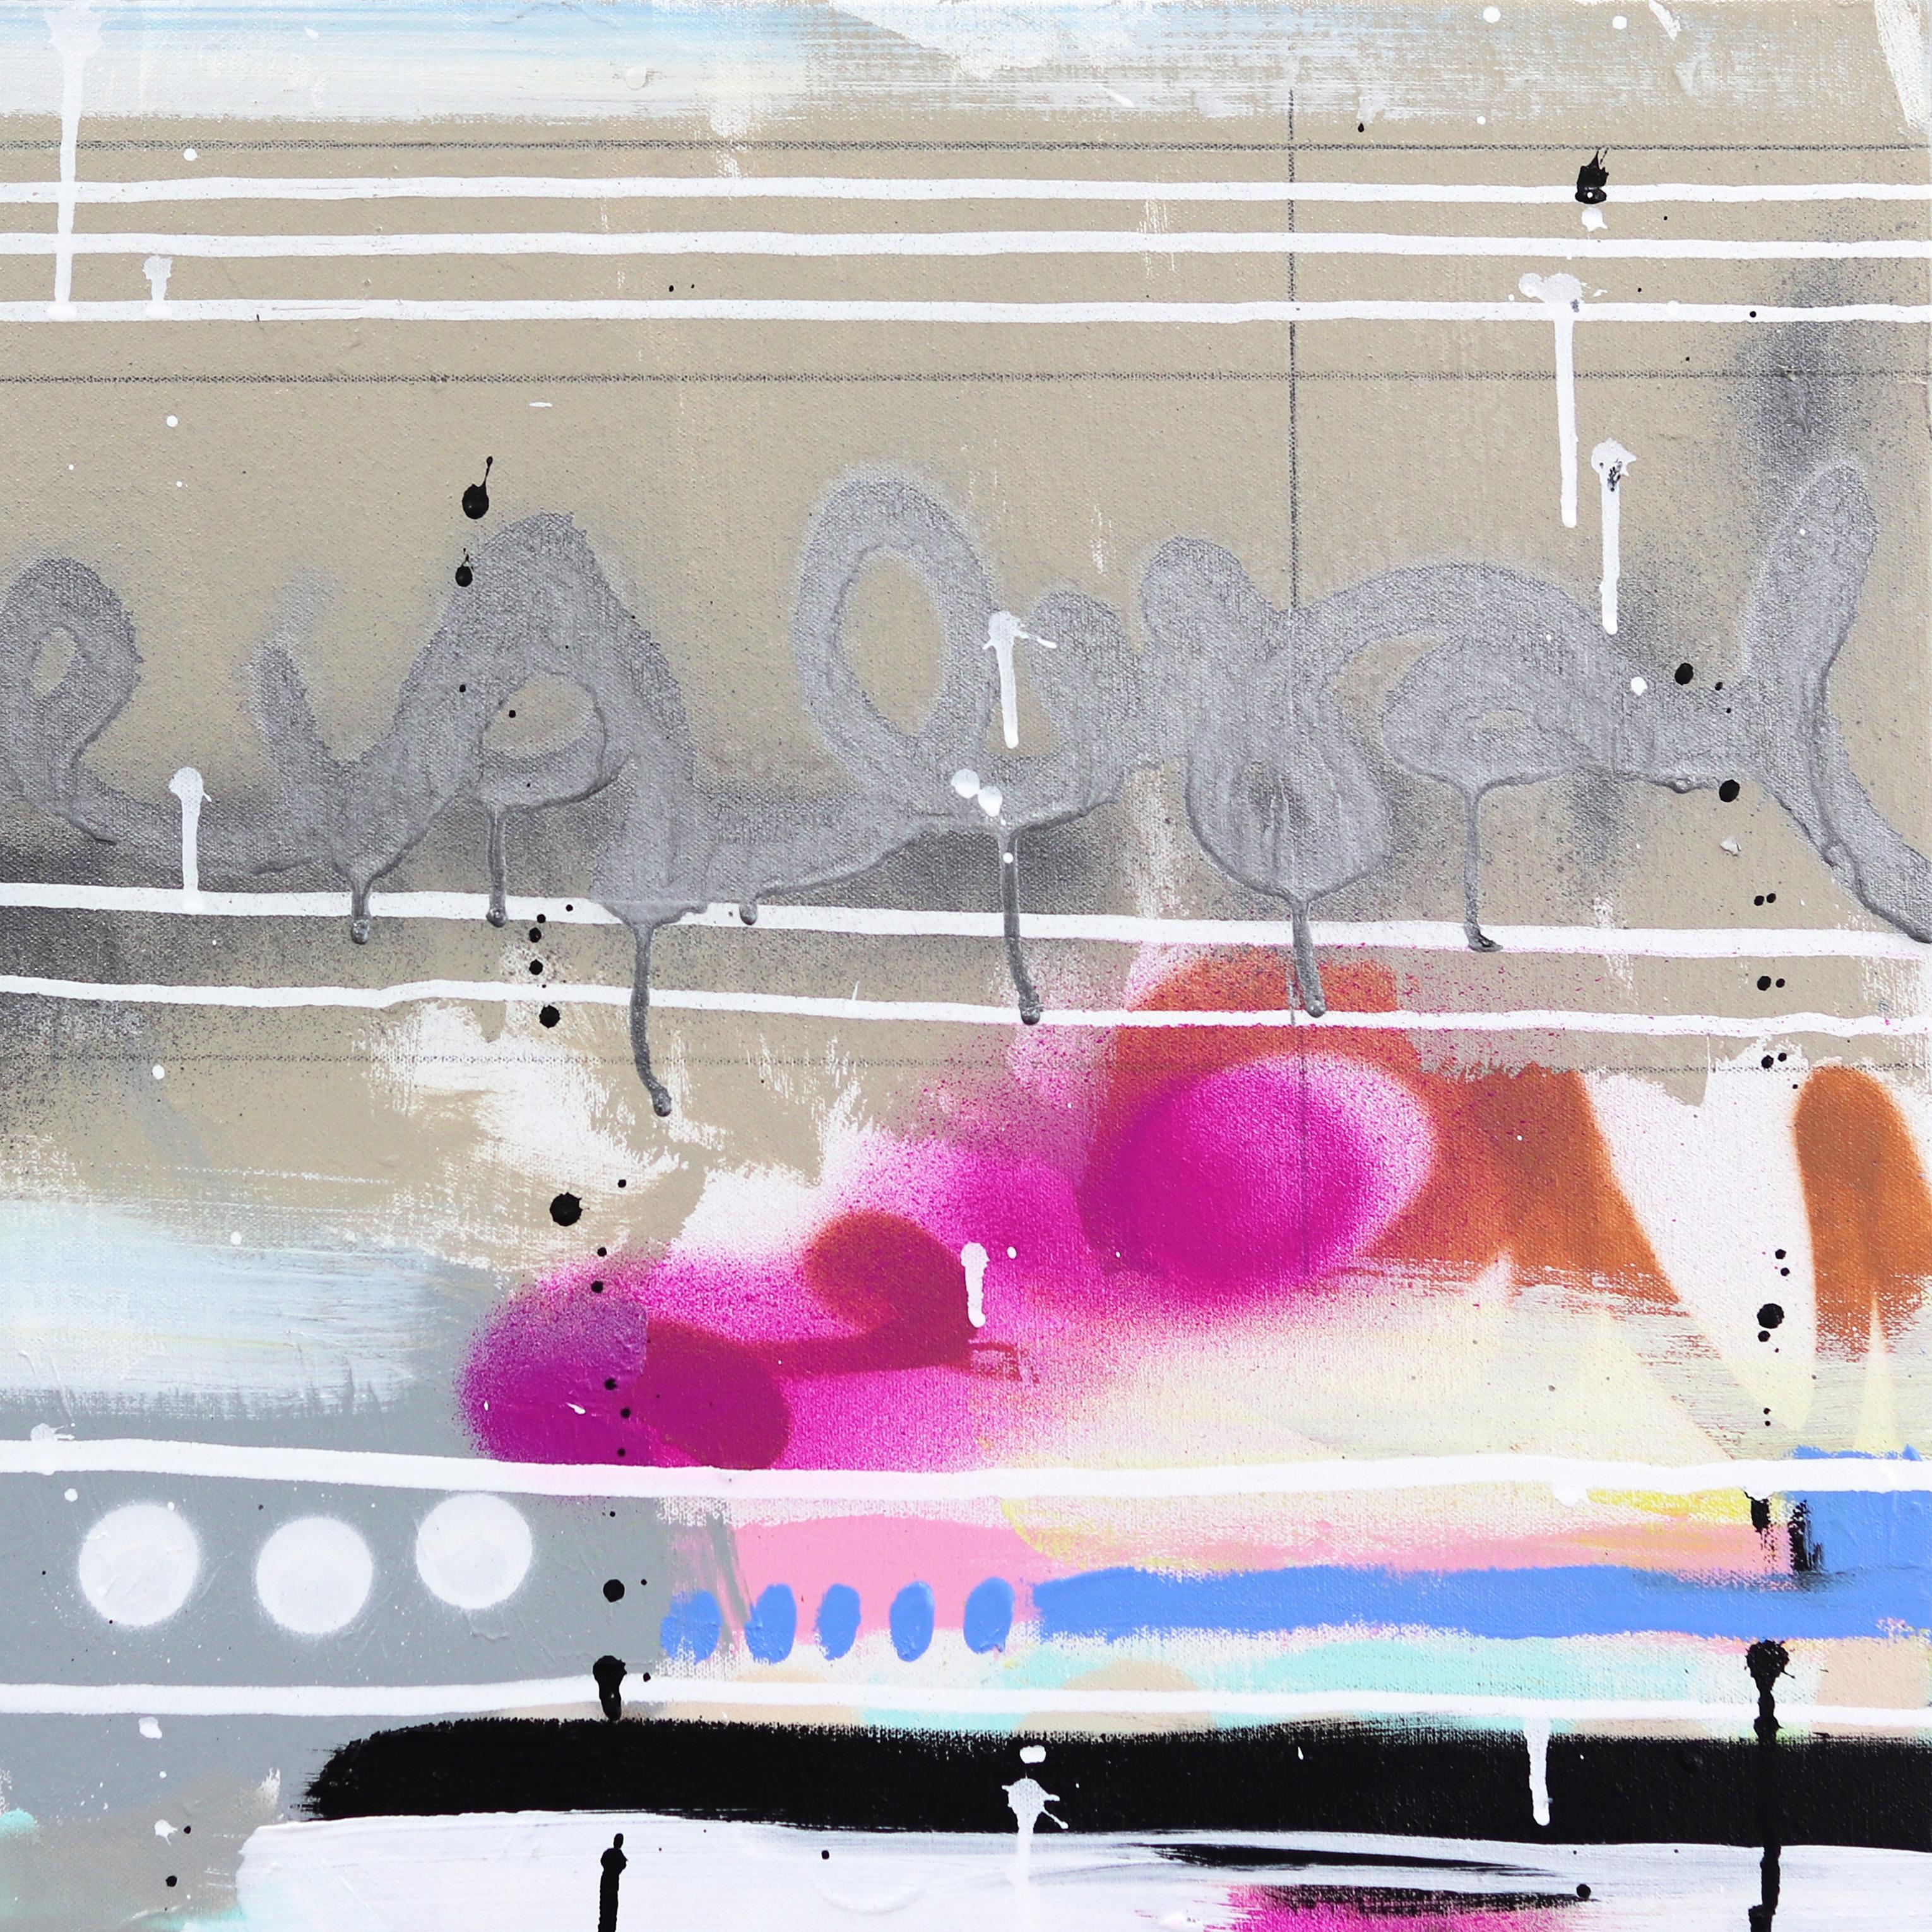 L'artiste de Los Angeles Amber Goldhammer peint des compositions abstraites spectaculaires à l'acrylique sur toile, avec des coups de pinceau énergiques. Goldhammer utilise ses peintures contemporaines pour exprimer des émotions proches de la poésie